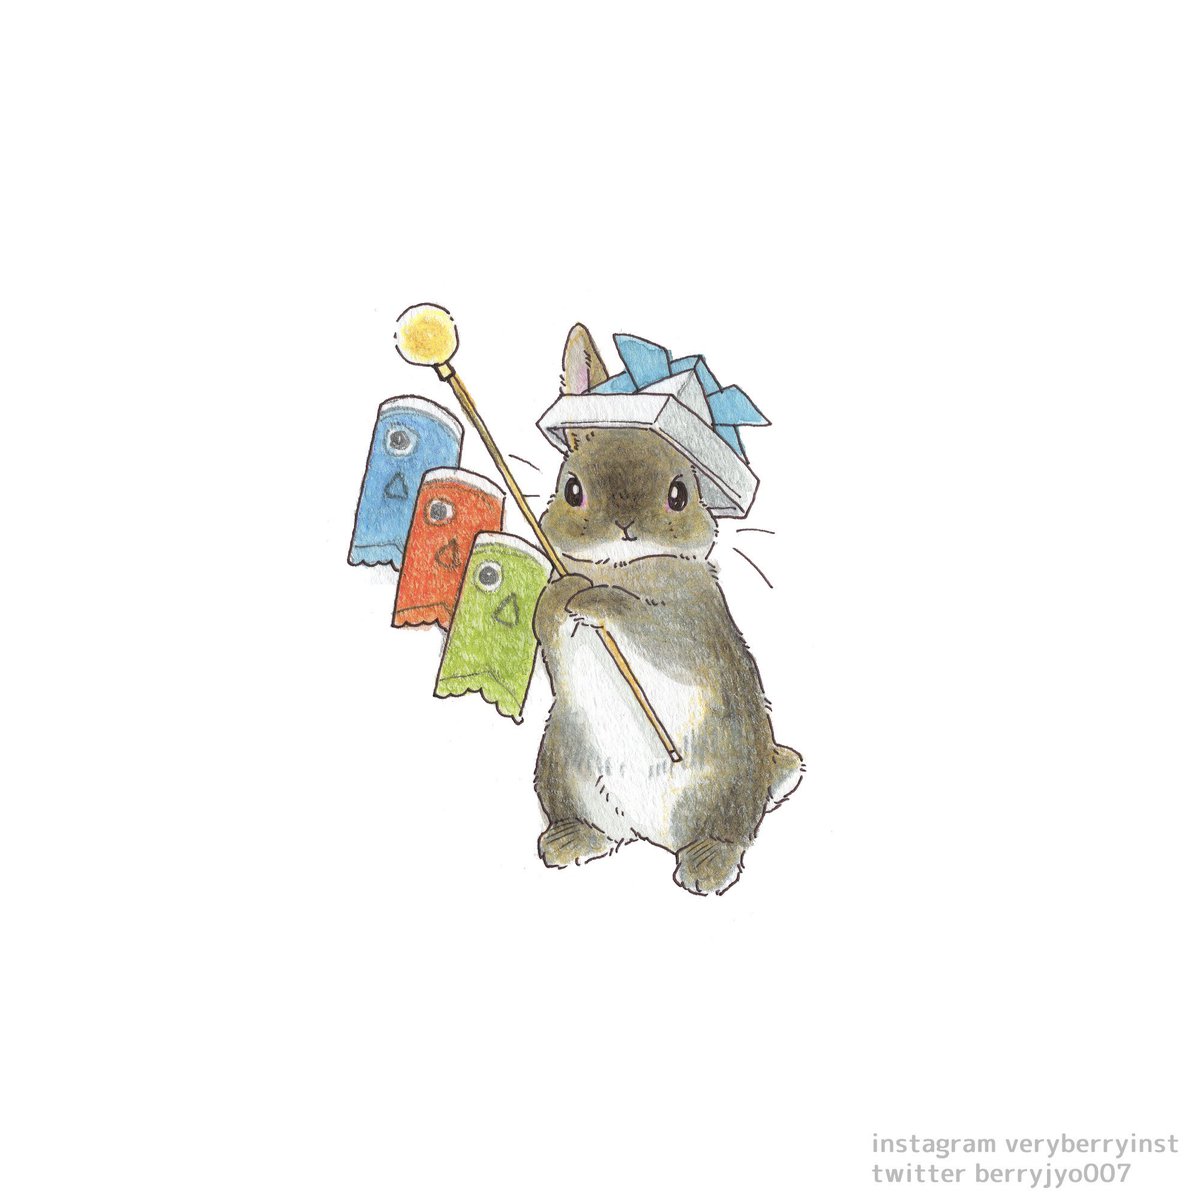 「#端午の節句   これ  むむの鯉のぼり〜」|VeryBerry うさぎ星さん4/8-9出展のイラスト